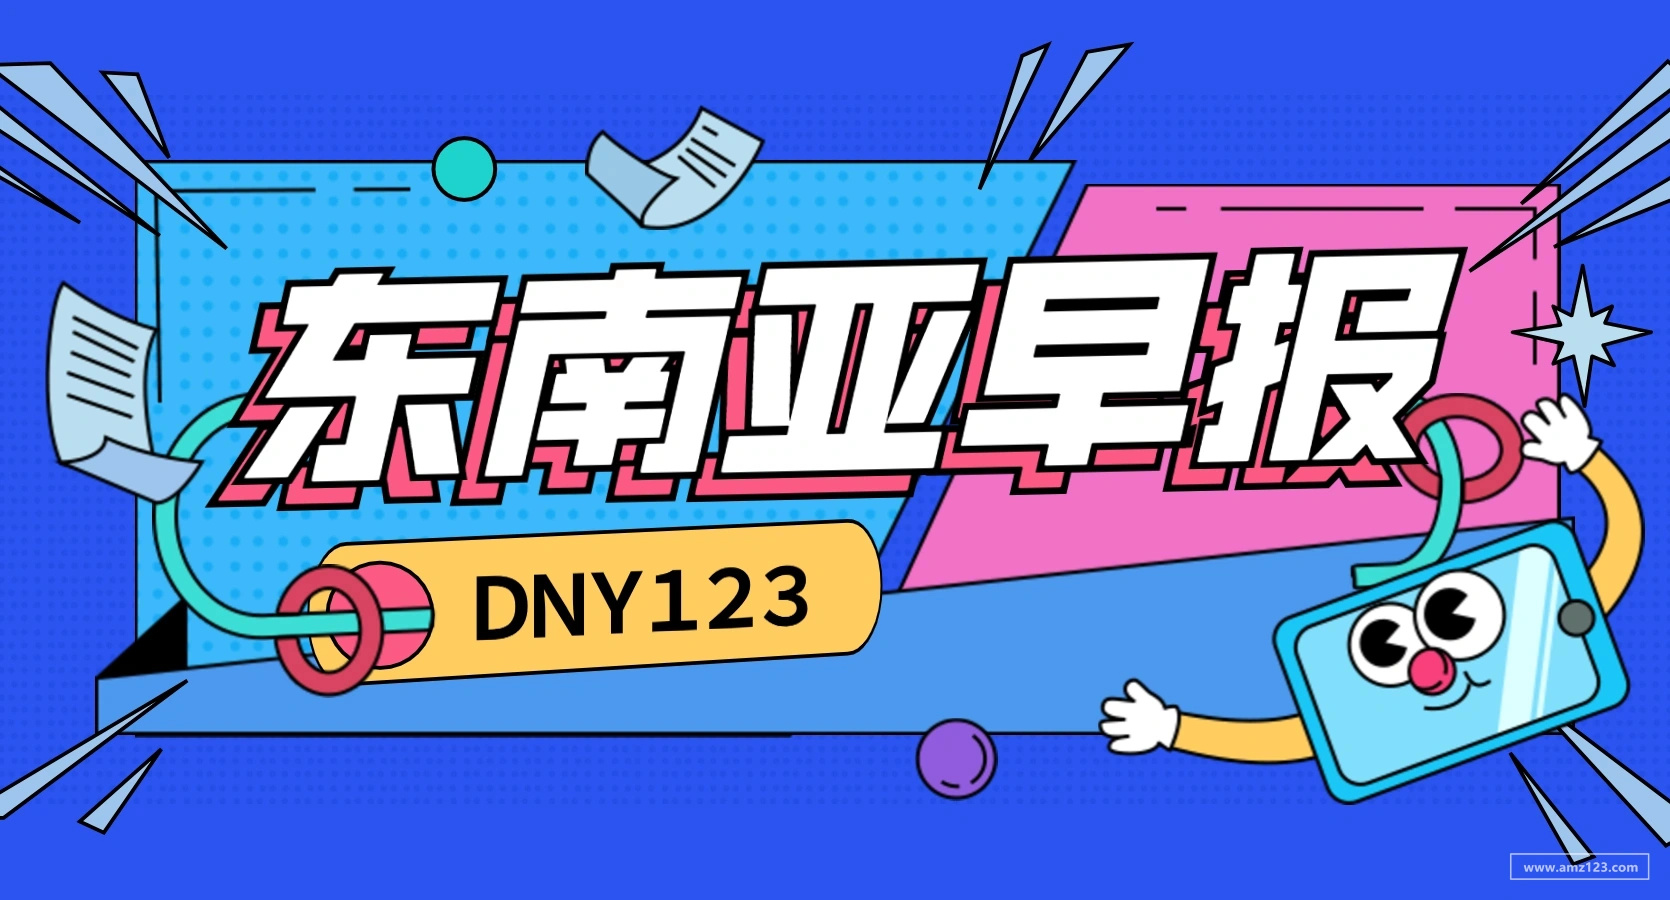 【DNY123跨境早报】Shopee物流咨询渠道改为线上人工客服咨询，印尼电商服务平台Desty再获500万美元投资。